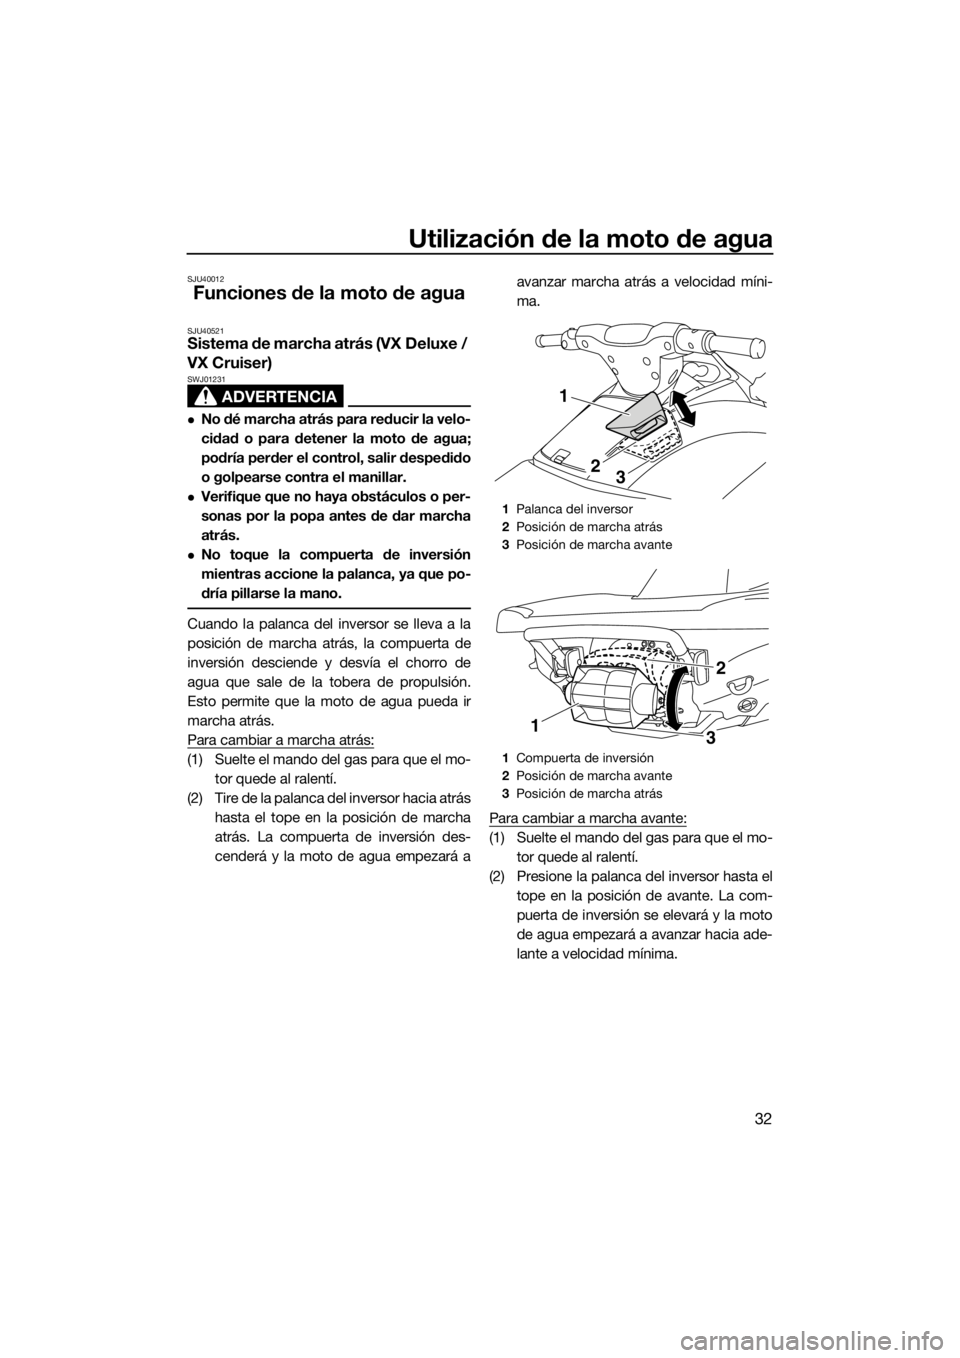 YAMAHA VX 2014  Manuale de Empleo (in Spanish) Utilización de la moto de agua
32
SJU40012
Funciones de la moto de agua
SJU40521Sistema de marcha atrás (VX Deluxe / 
VX Cruiser)
ADVERTENCIA
SWJ01231
No dé marcha atrás para reducir la velo-
c